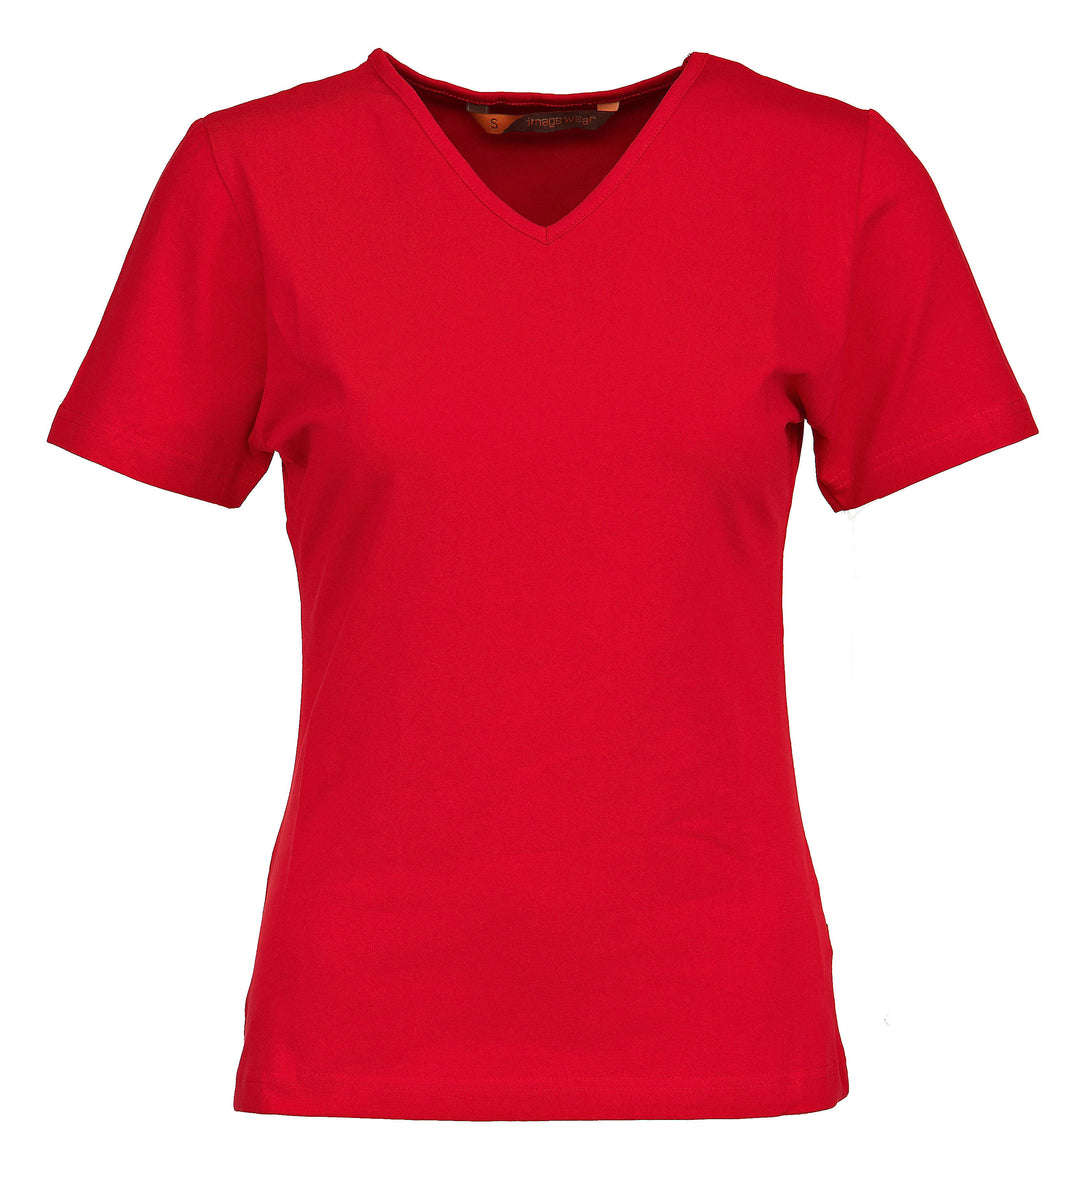 Naisten lyhythihainen kirkkaanpunainen T-paita v-pääntiellä. Malli on aavistuksen tyköistuva. Joustava ja laadukas materiaali.